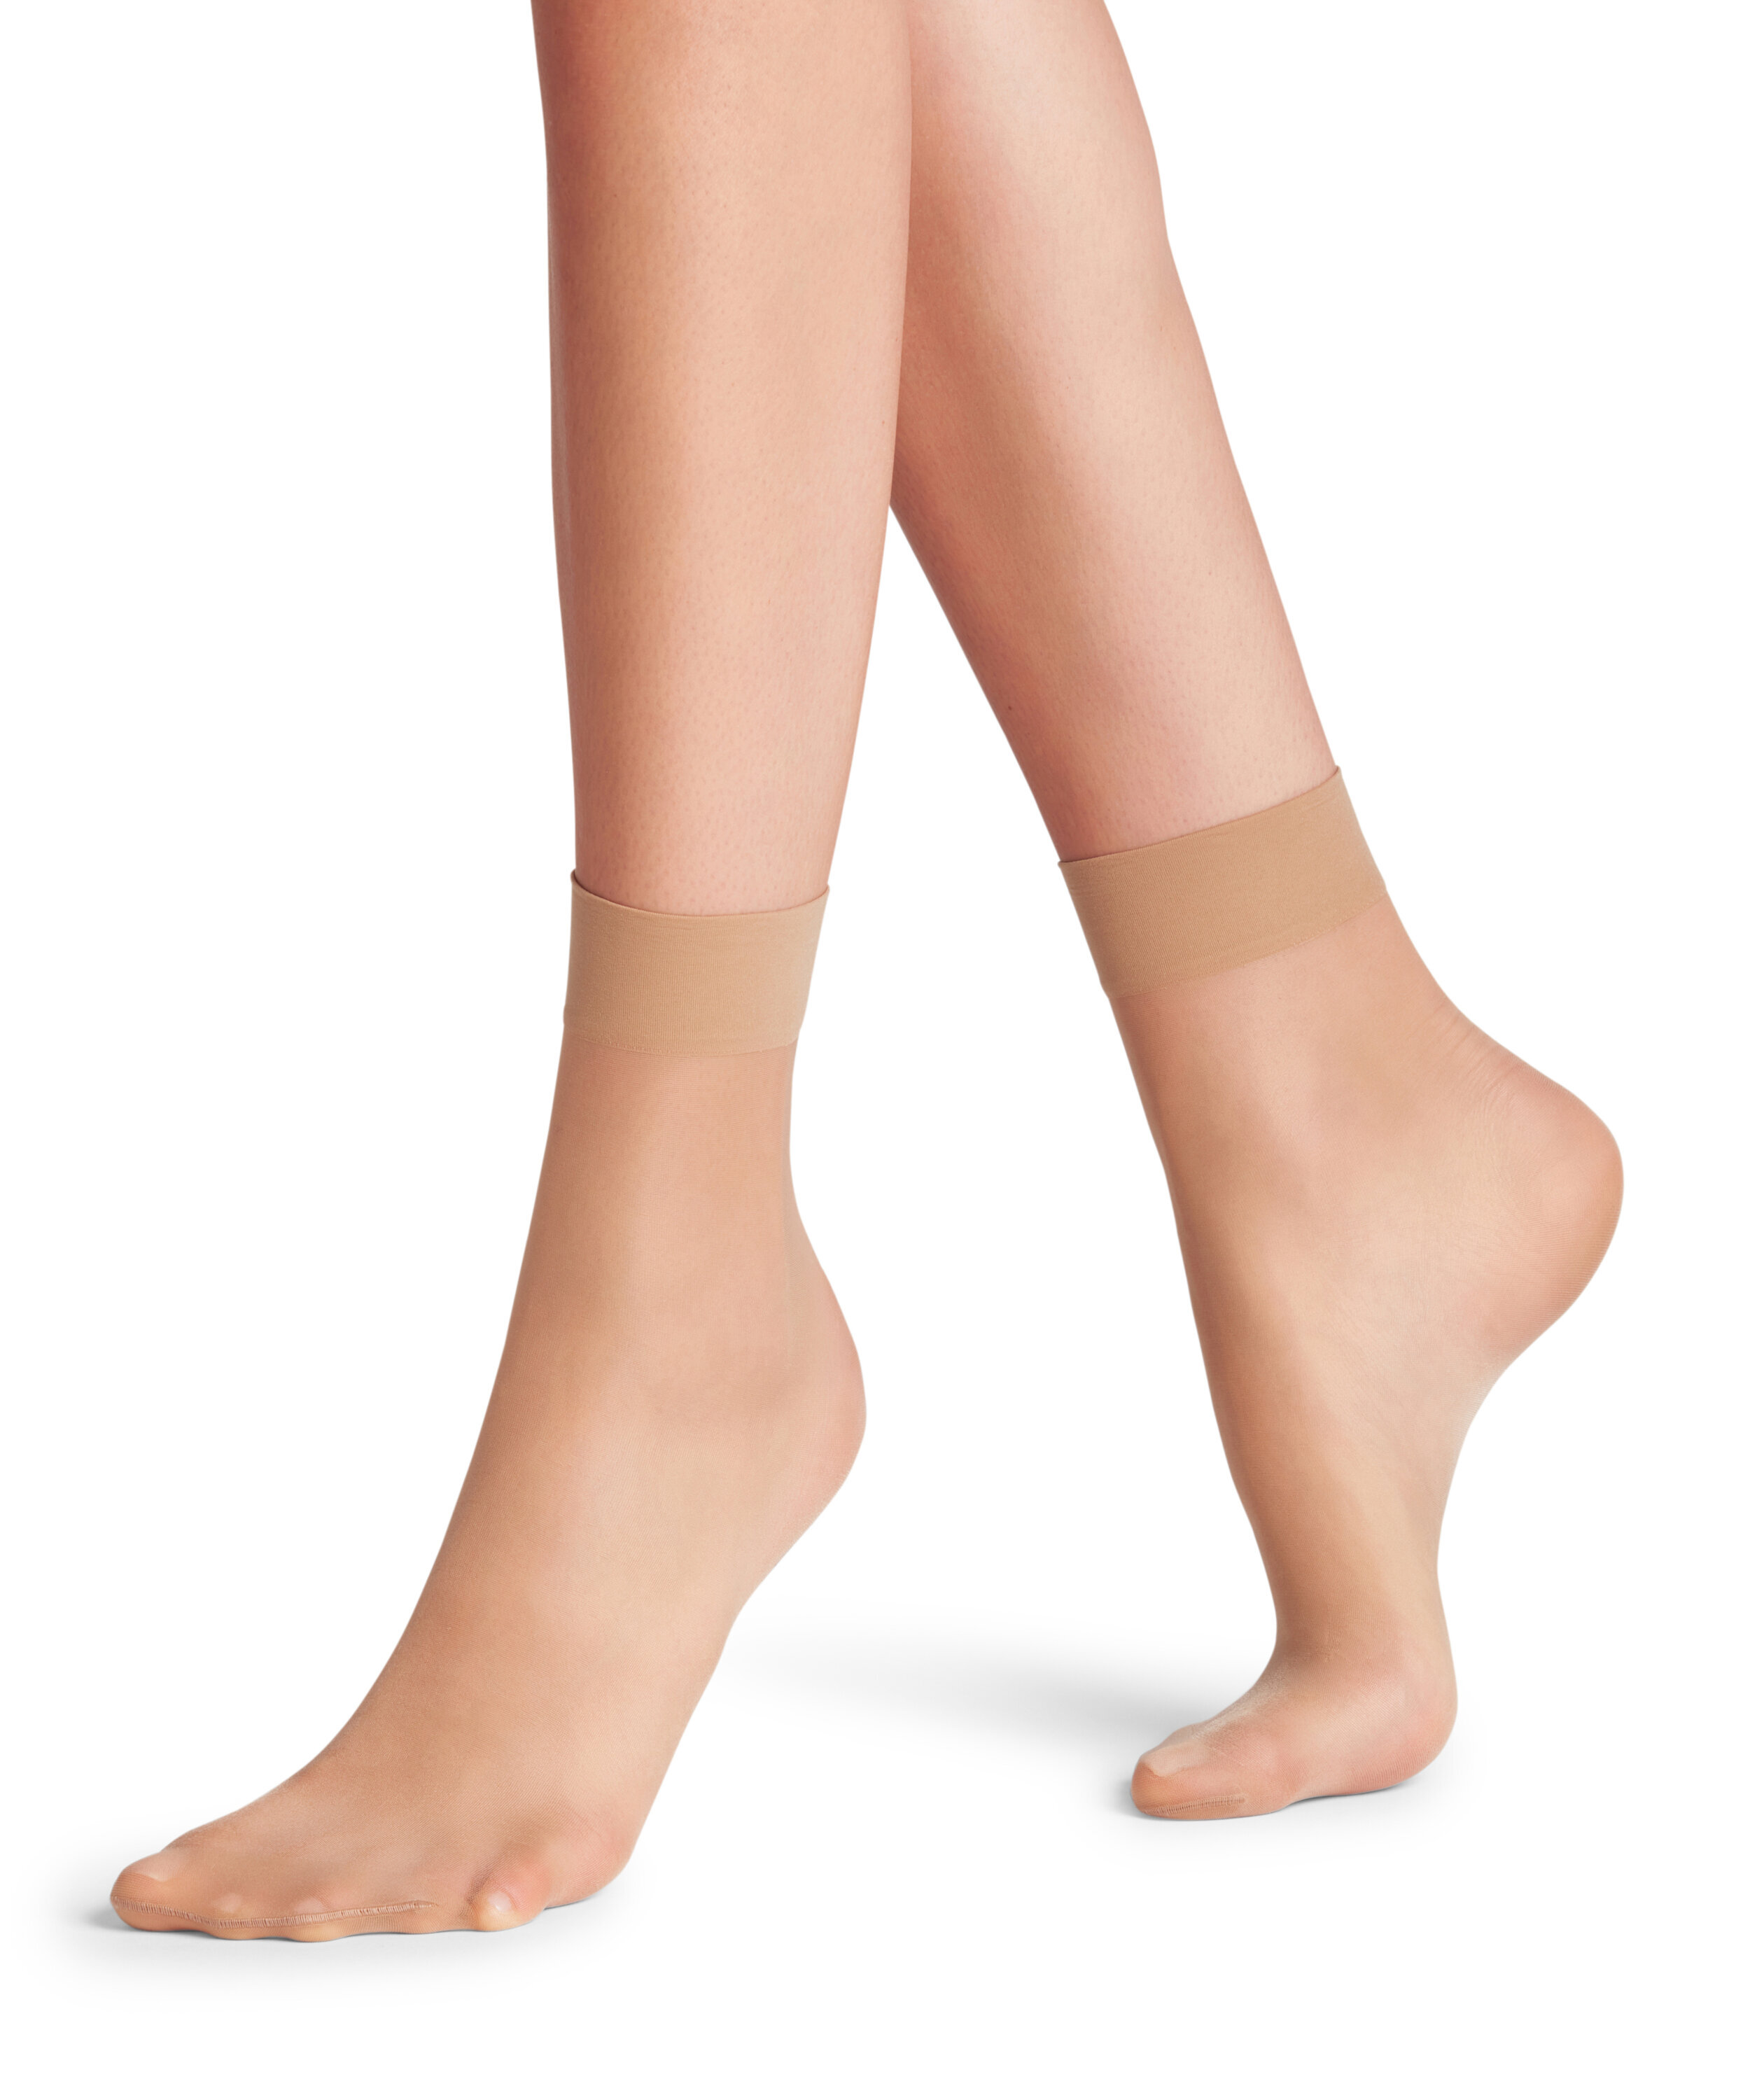 Falke women's socks silky smooth 15 DEN- golden